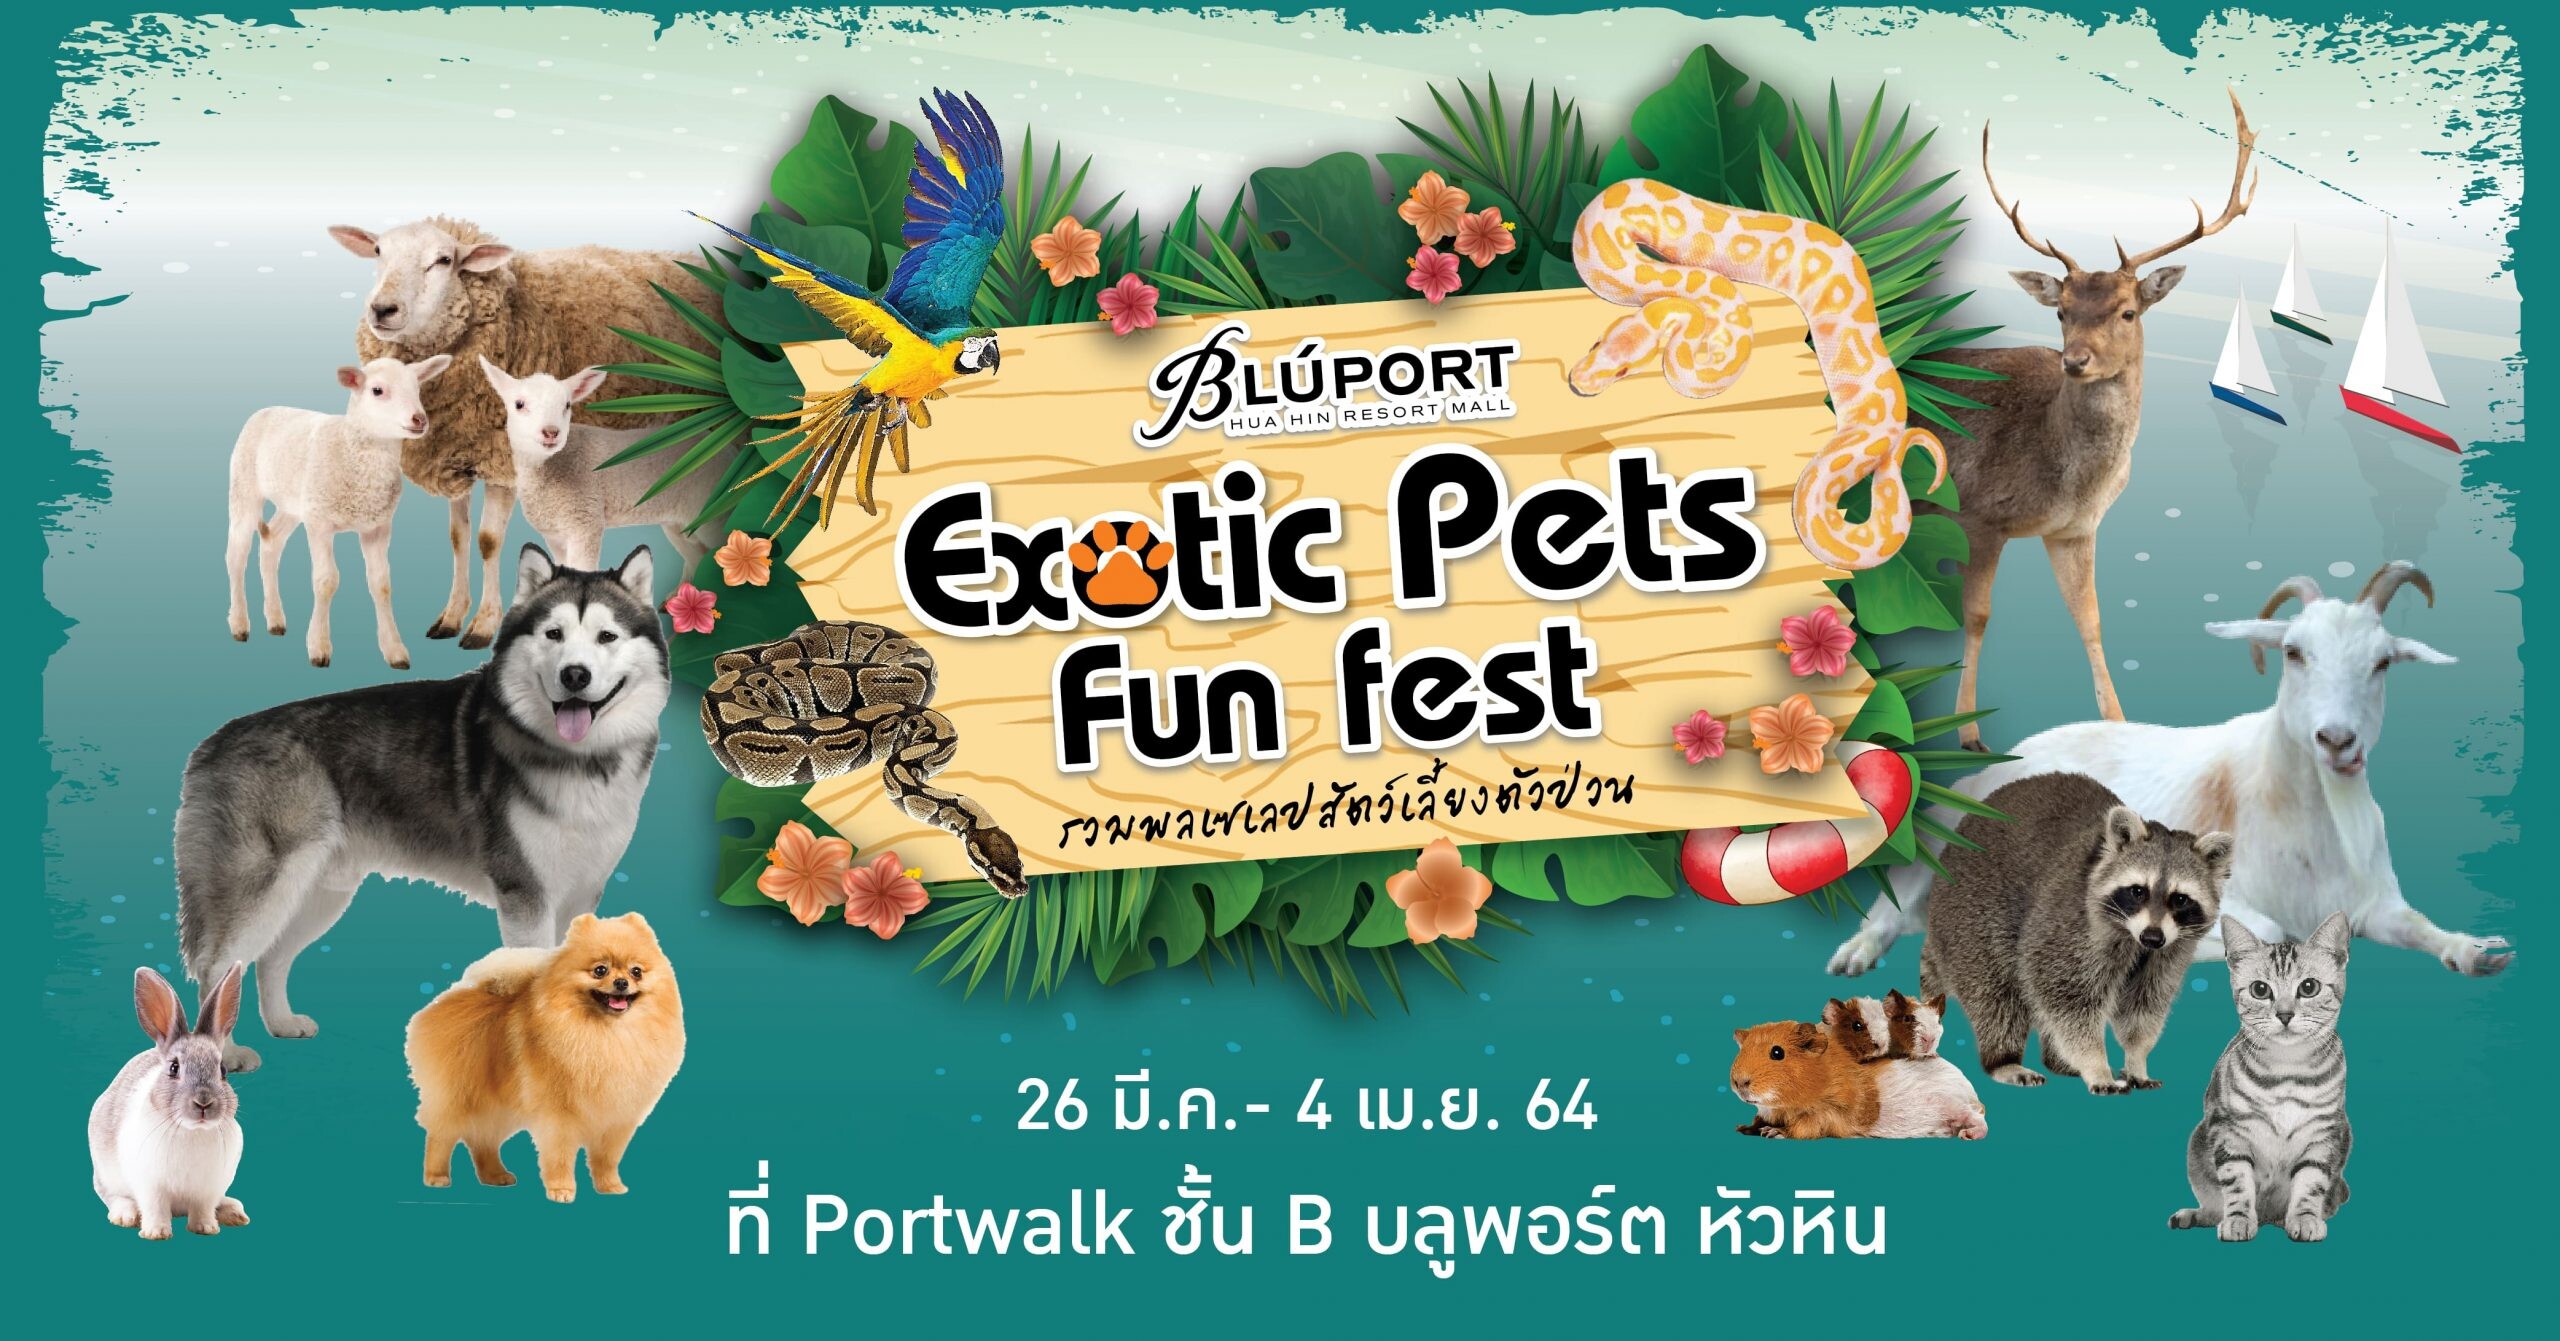 ซัมเมอร์นี้มีฟิน บลูพอร์ตหัวหิน เอาใจคนรักสัตว์เลี้ยงแสนรักในงาน Exotic Pets Fun Fest รวมพลเซเลปสัตว์เลี้ยงตัวป่วน